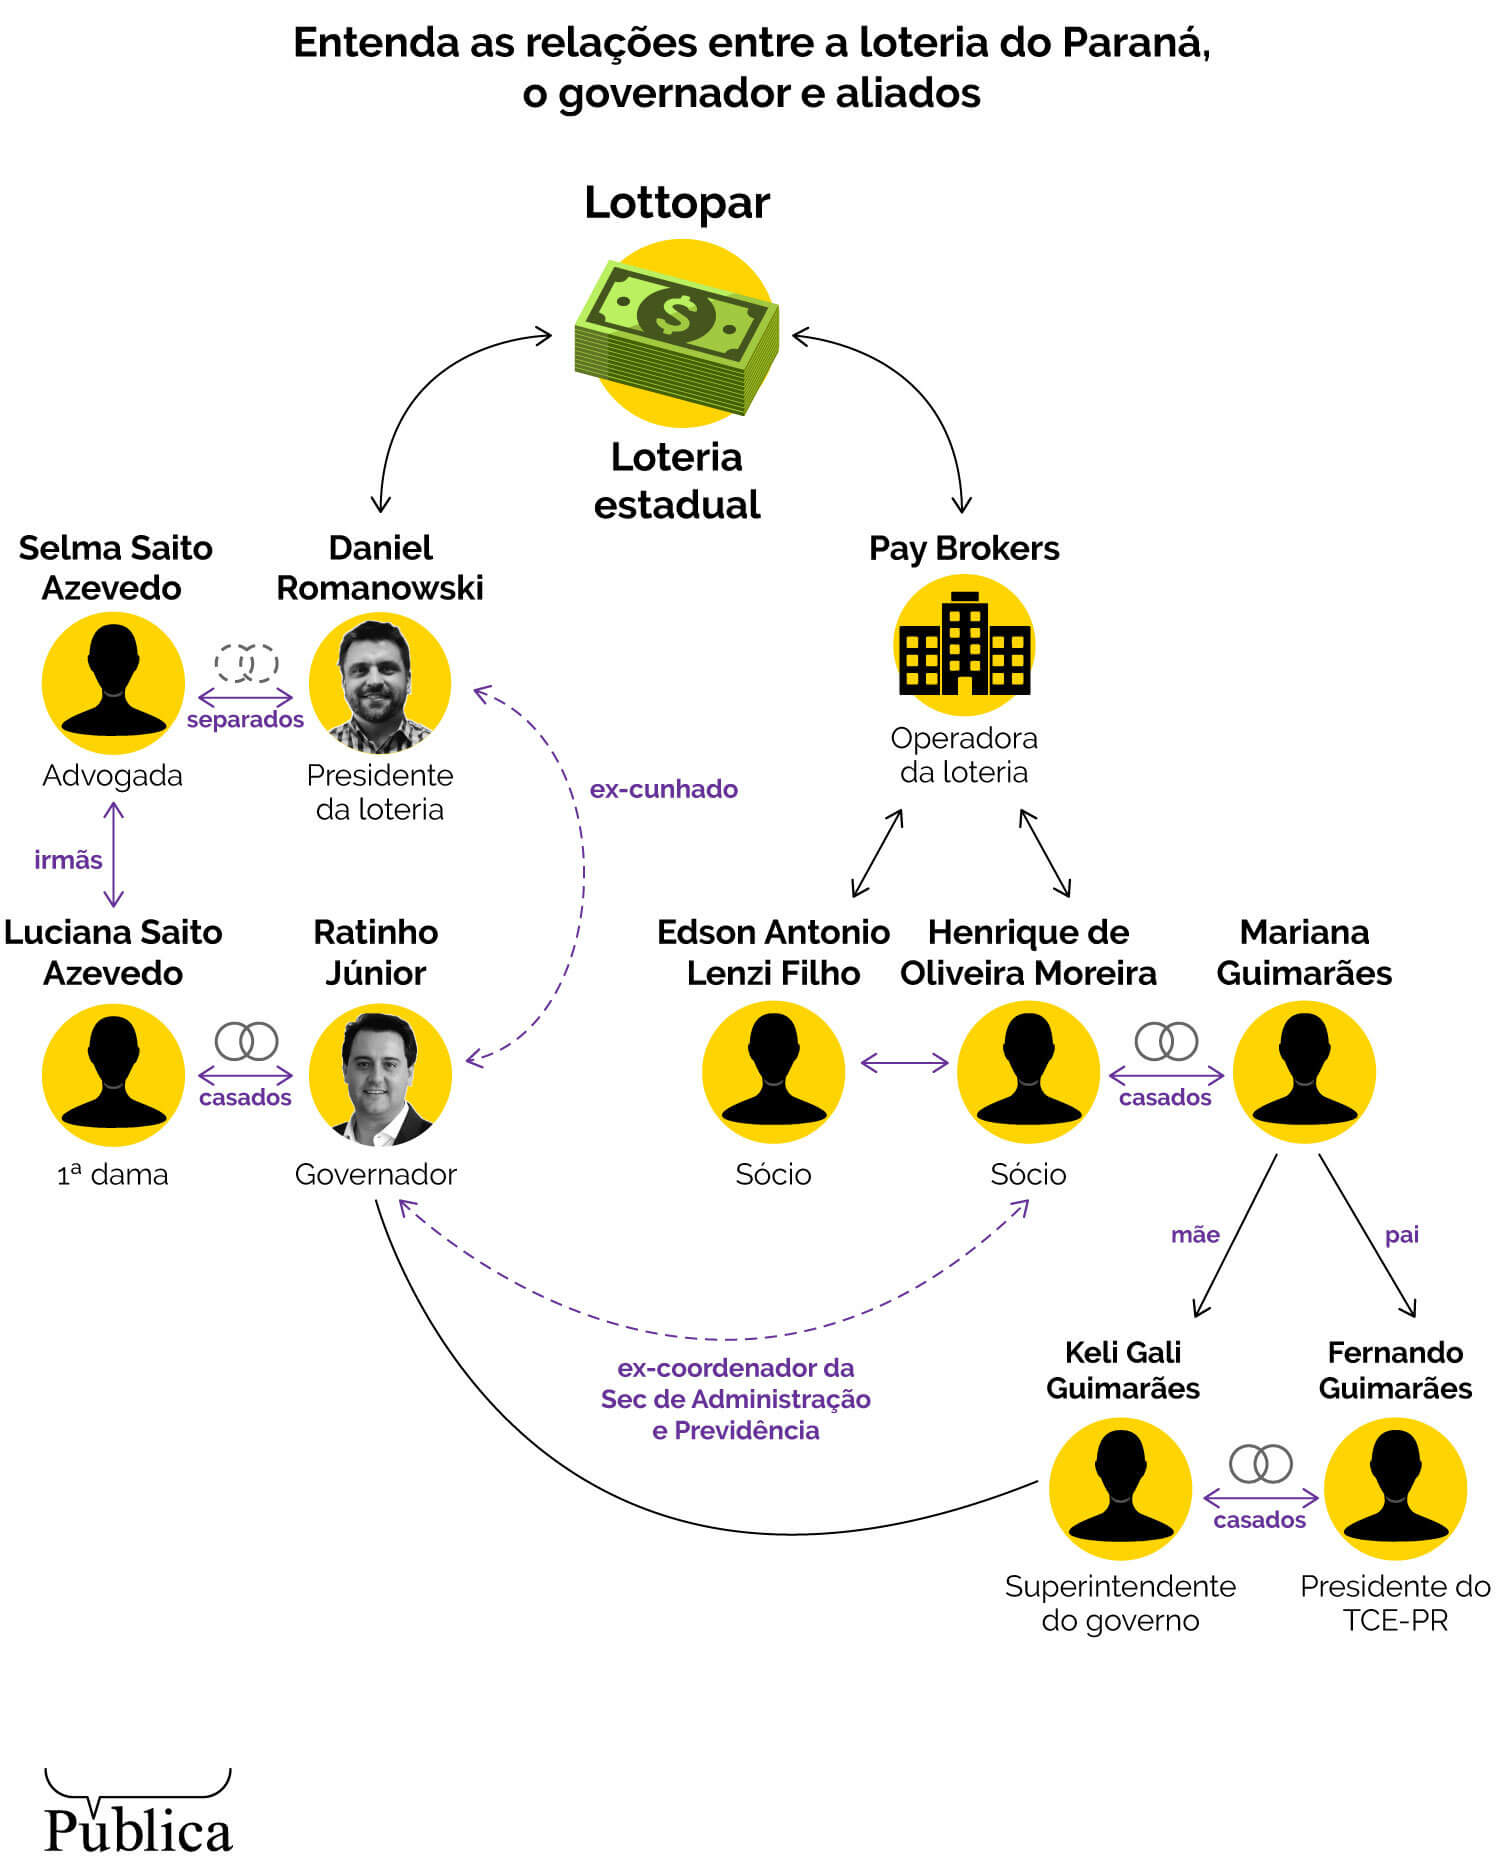 Infográfico mostra as relações entre a loteria do Paraná, a Lottopar, e o governo e seus aliados